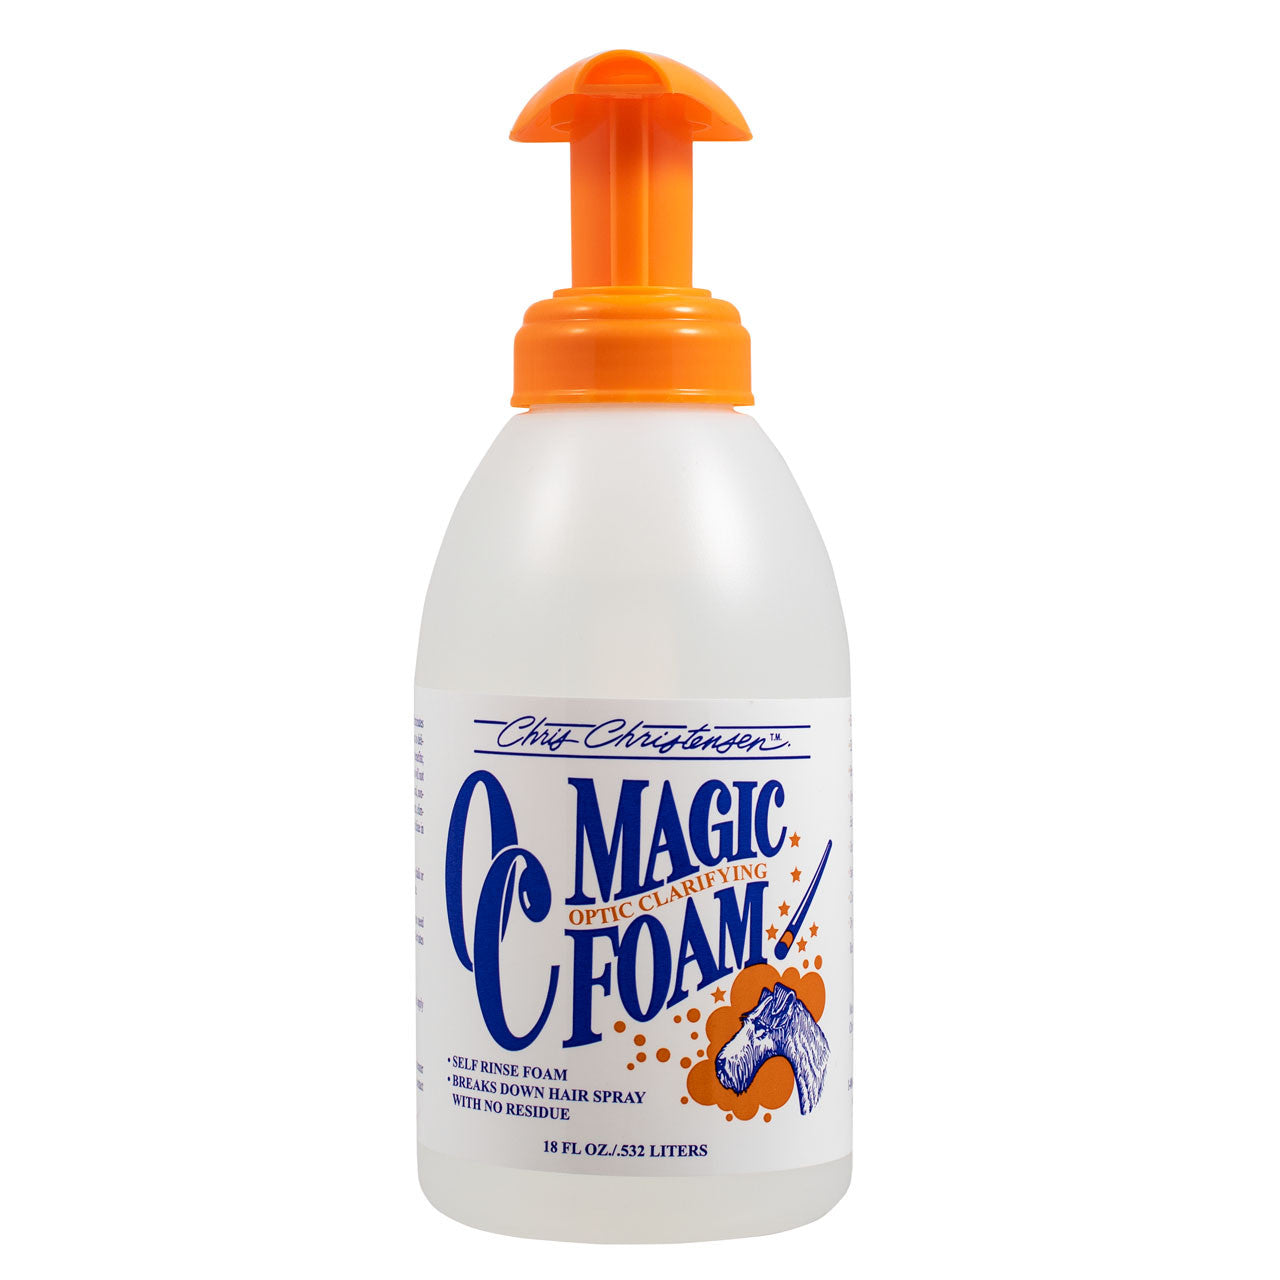 Chris Christensen OC Magic Foam Trocken-Shampoo-Schaum, optischer Aufheller, Cleaner, 532ml